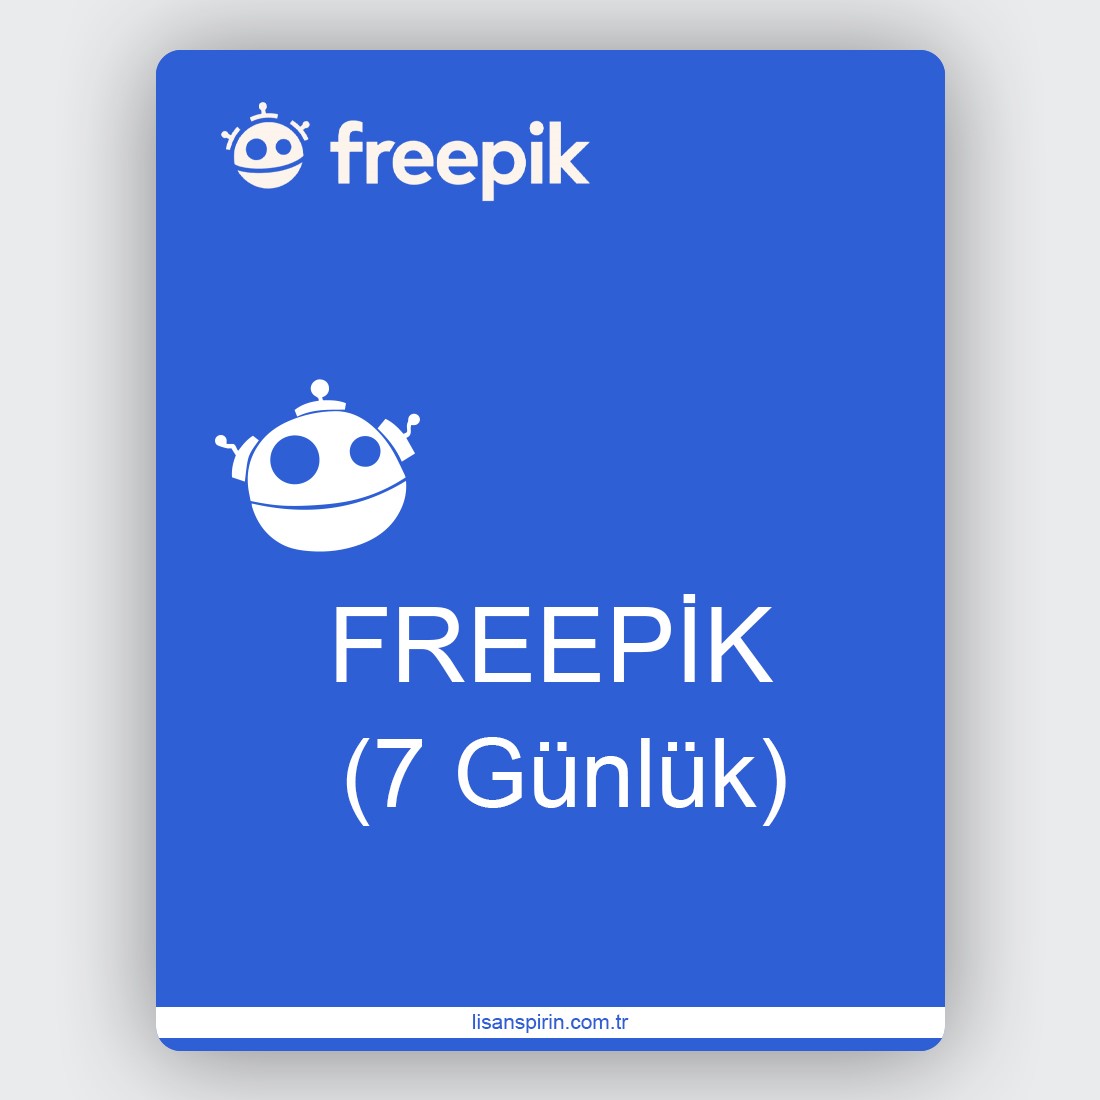 Freepik Premium (7 Gün)